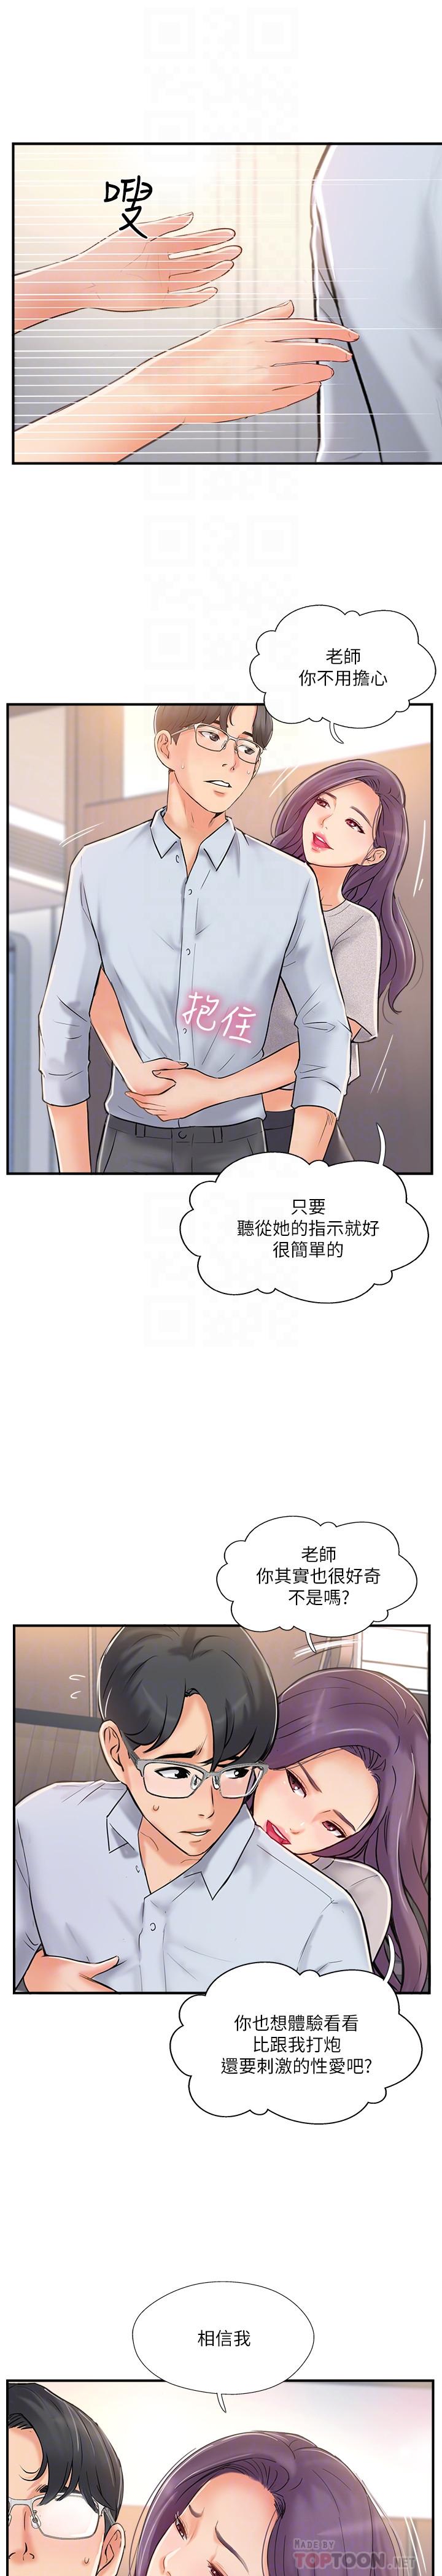 韩国污漫画 完美新伴侶 第20话-通往刺激新世界的测验 4